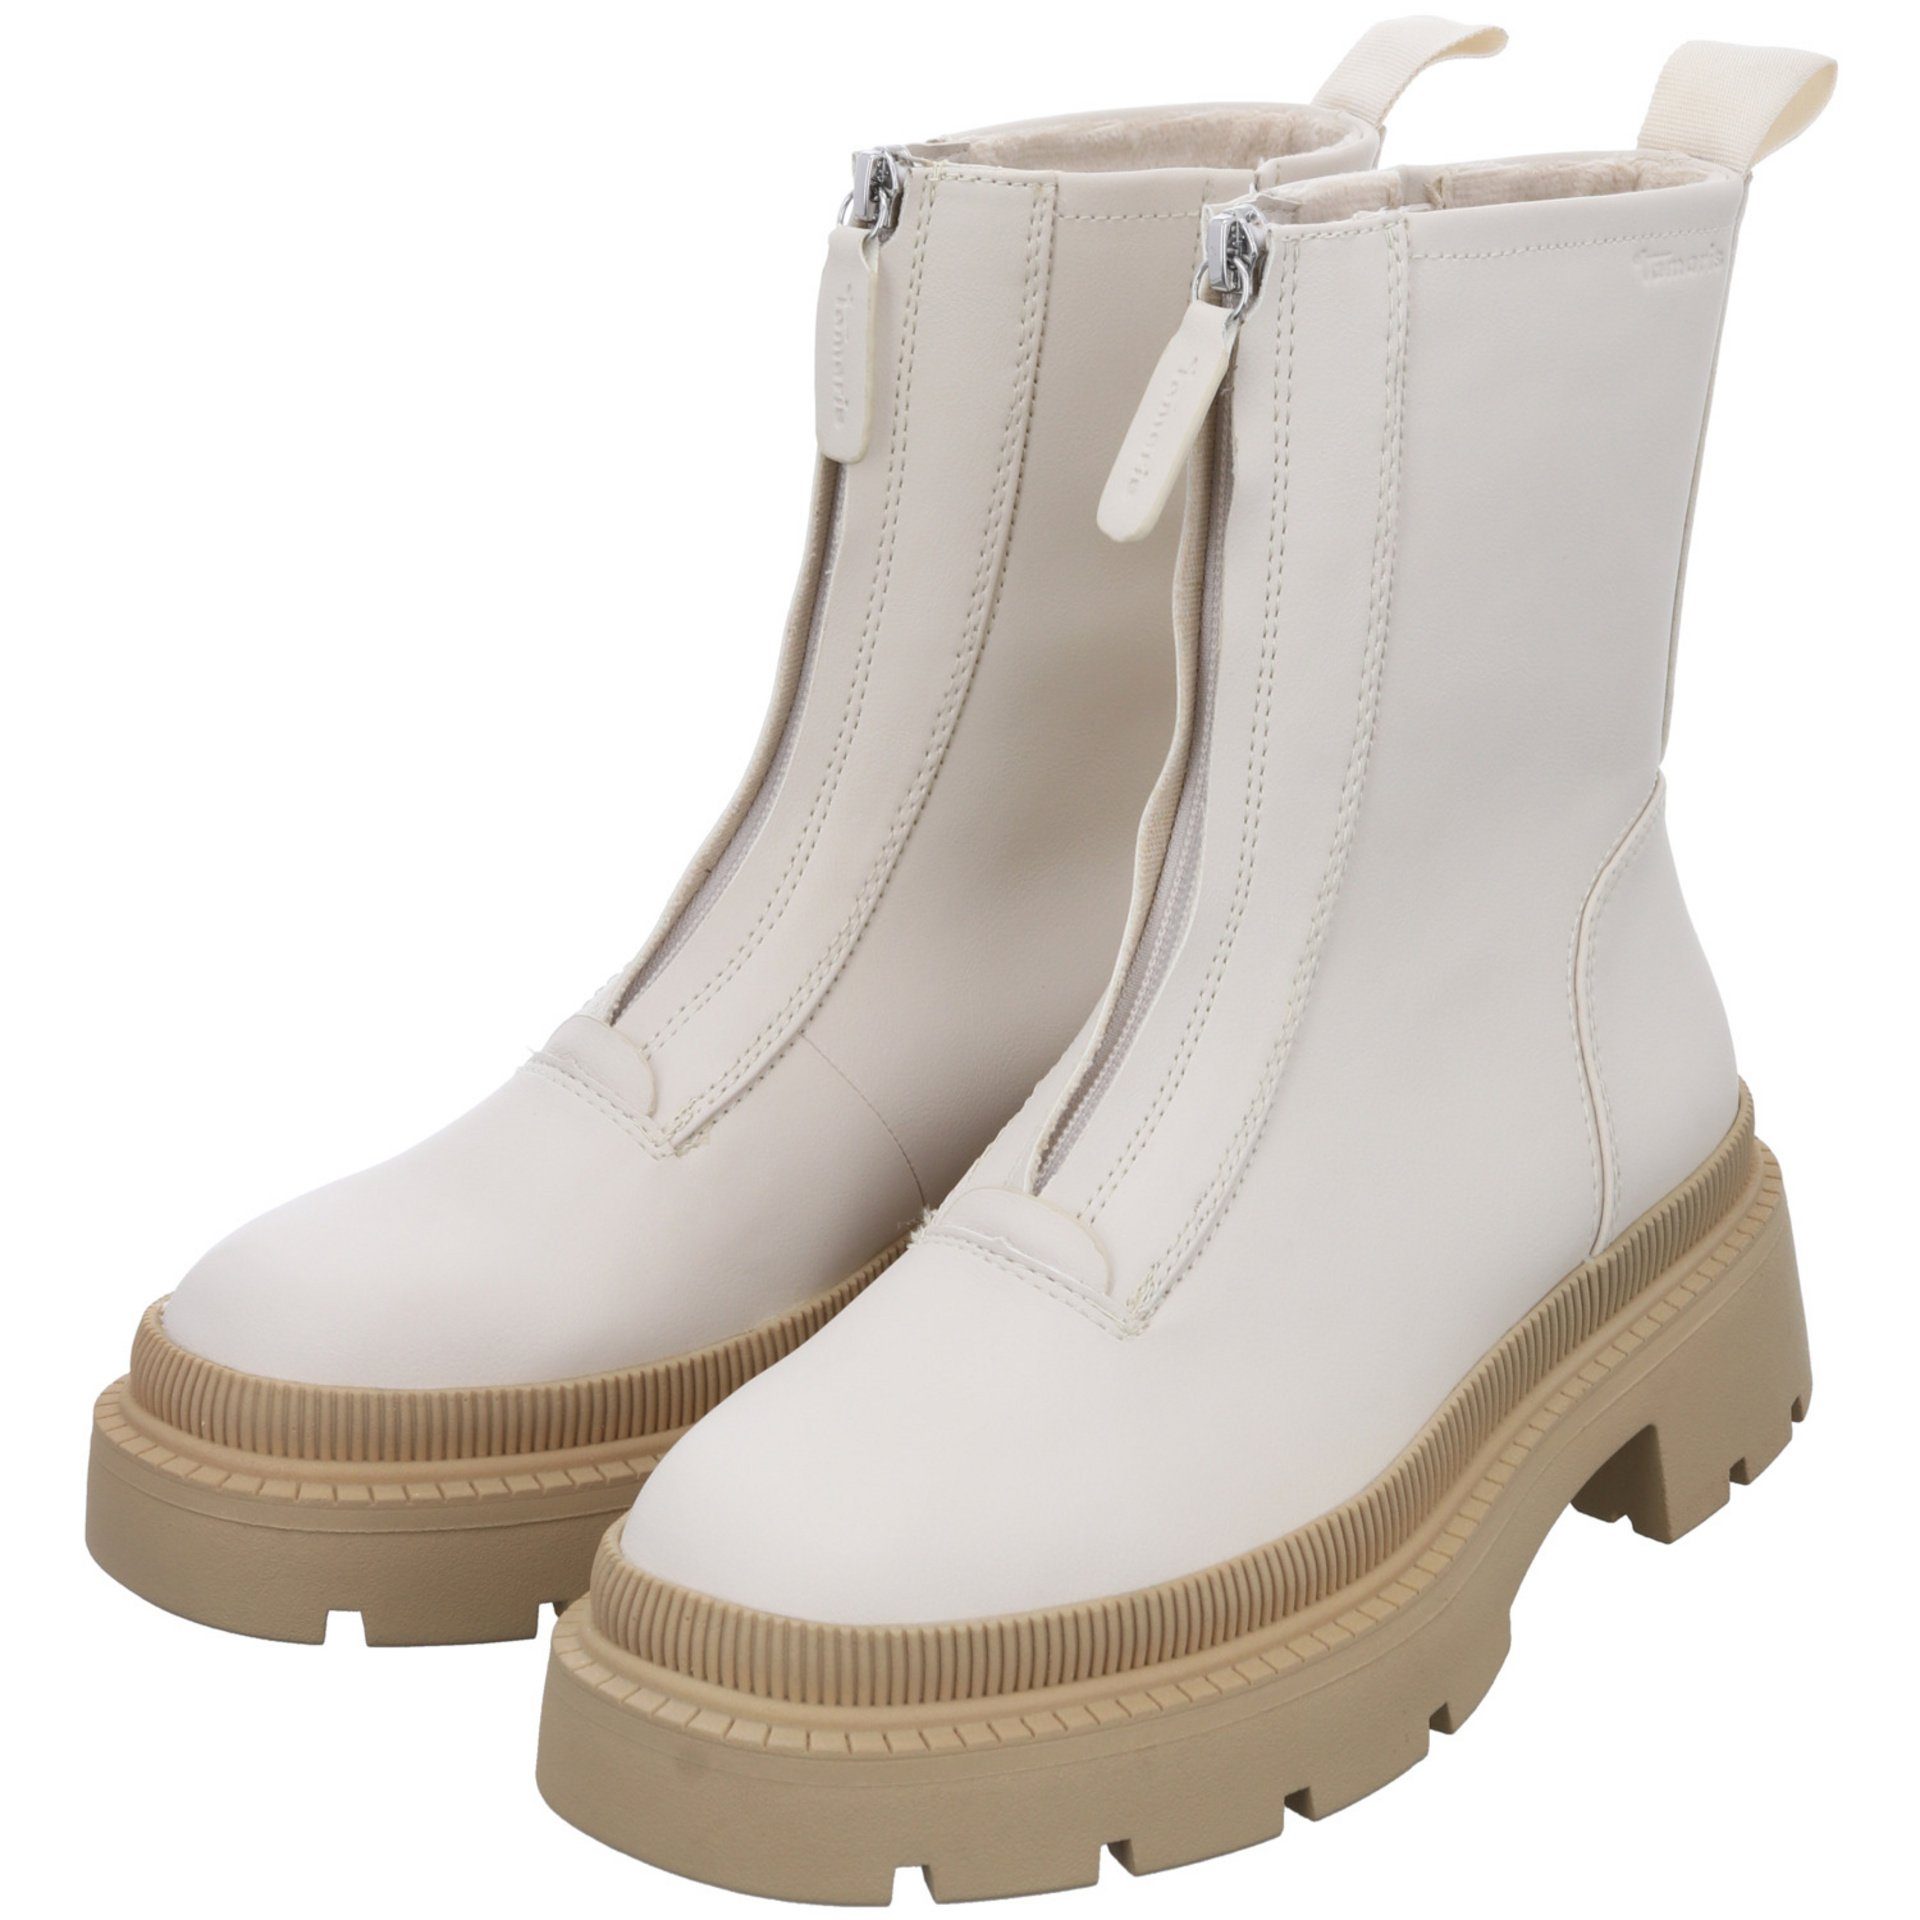 Schuhe Freizeit Boots IVORY/BEIGE Stiefel Stiefel Damen Synthetik Tamaris Elegant (21203664)